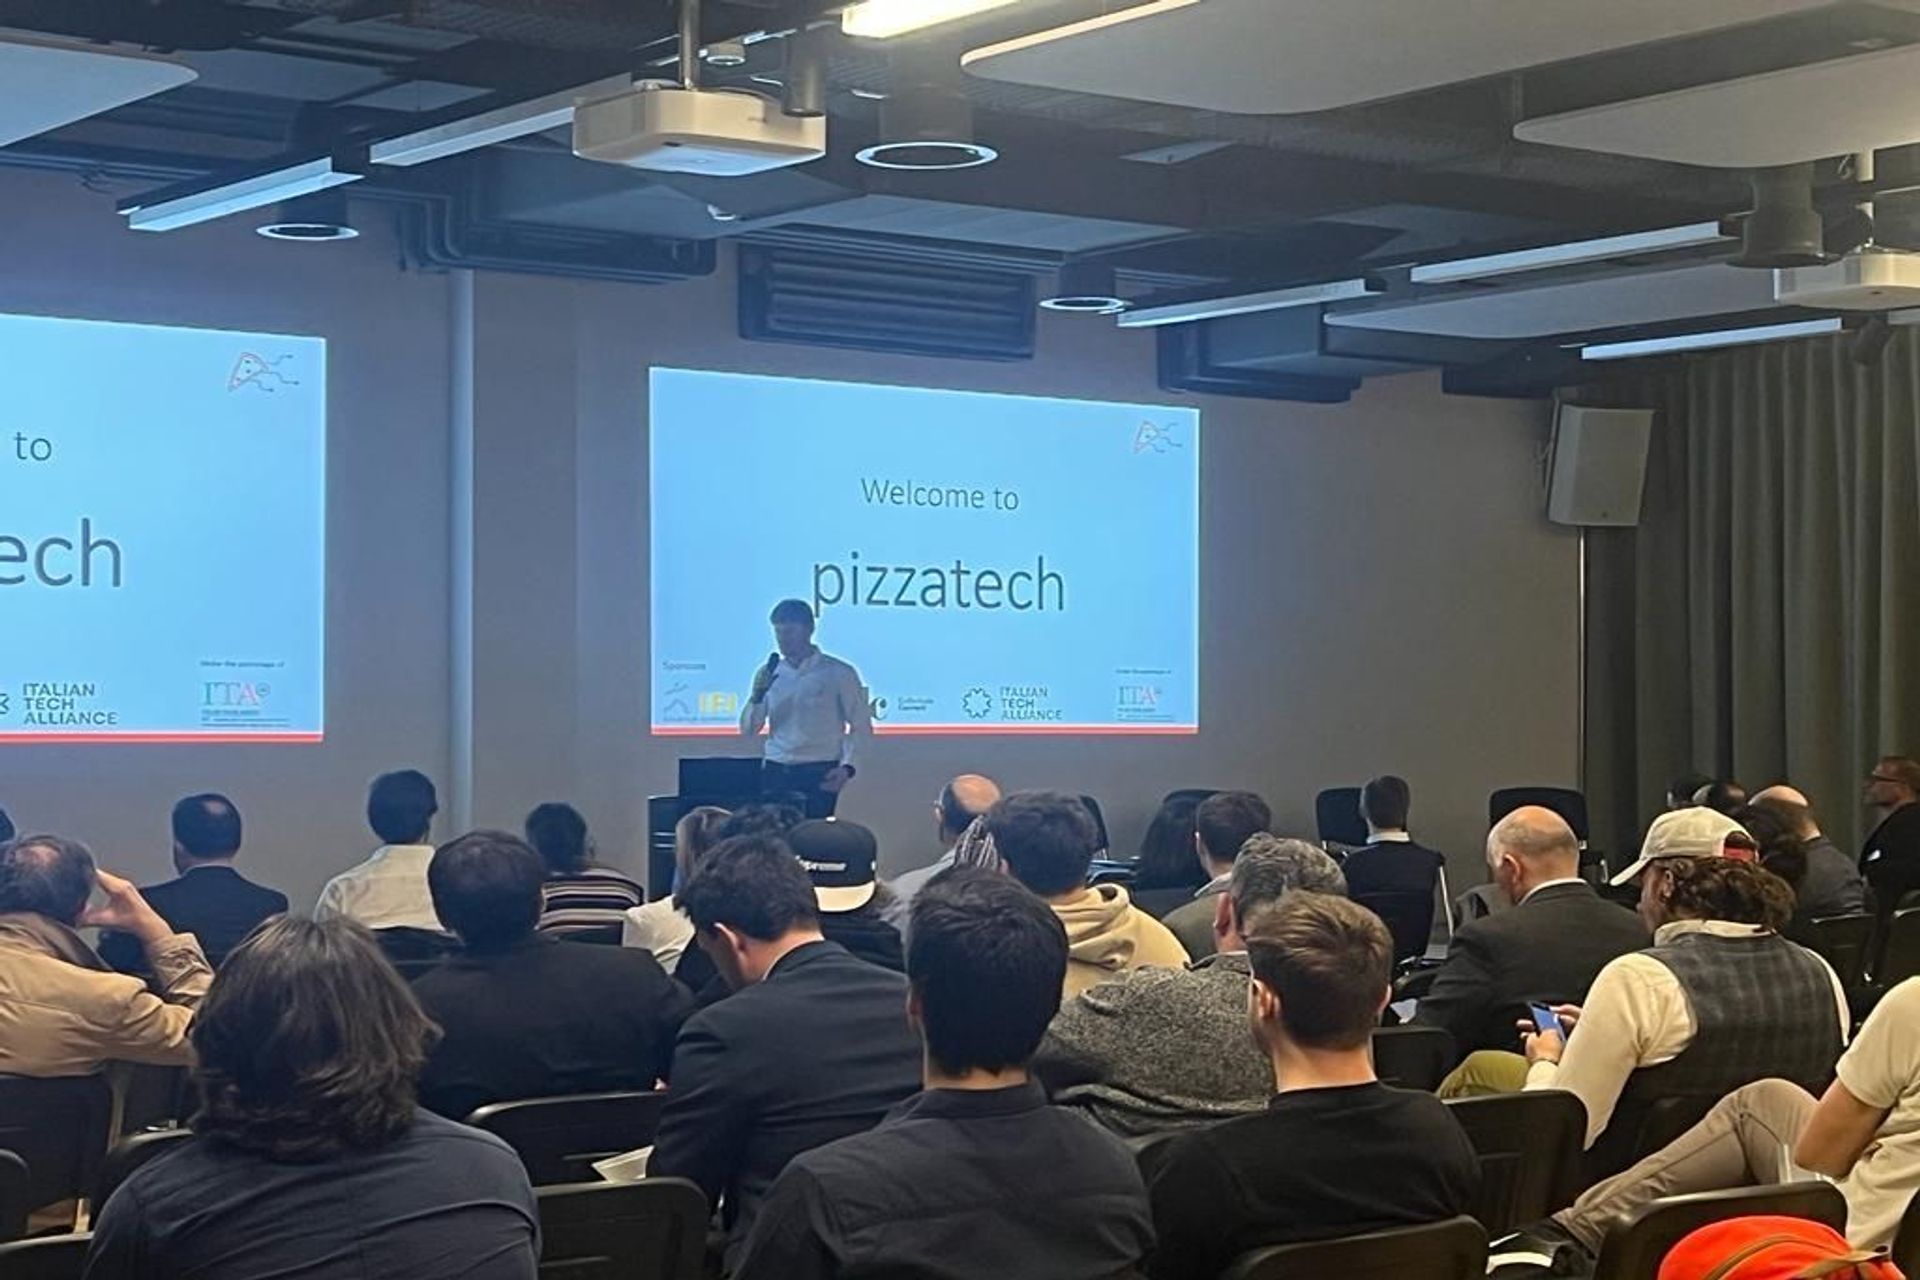 Den første utgaven av "Italian Tech Night", organisert av #pizzatech-foreningen, fant sted om kvelden 24. mars 2022 på Startup Space av IFJ i Schlieren, nær Zürich: introduksjonstalen av arrangøren Gianmaria Sbetta